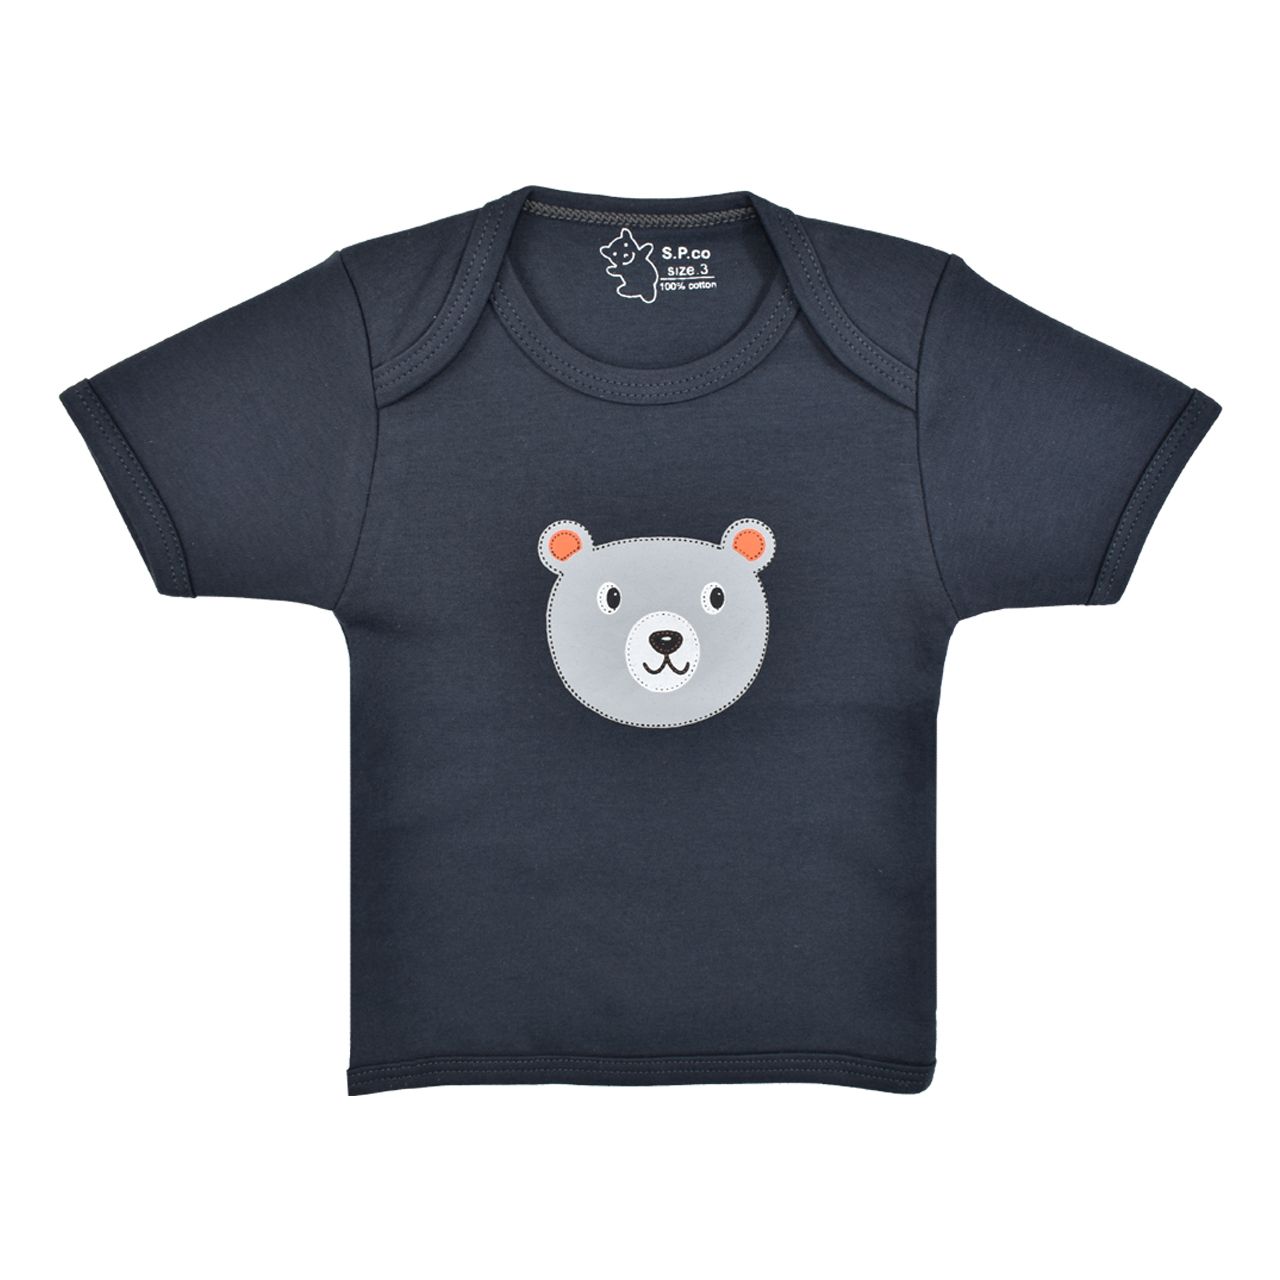 تی شرت آستین کوتاه نوزادی اسپیکو کد 300 -3 بسته دو عددی -  - 5